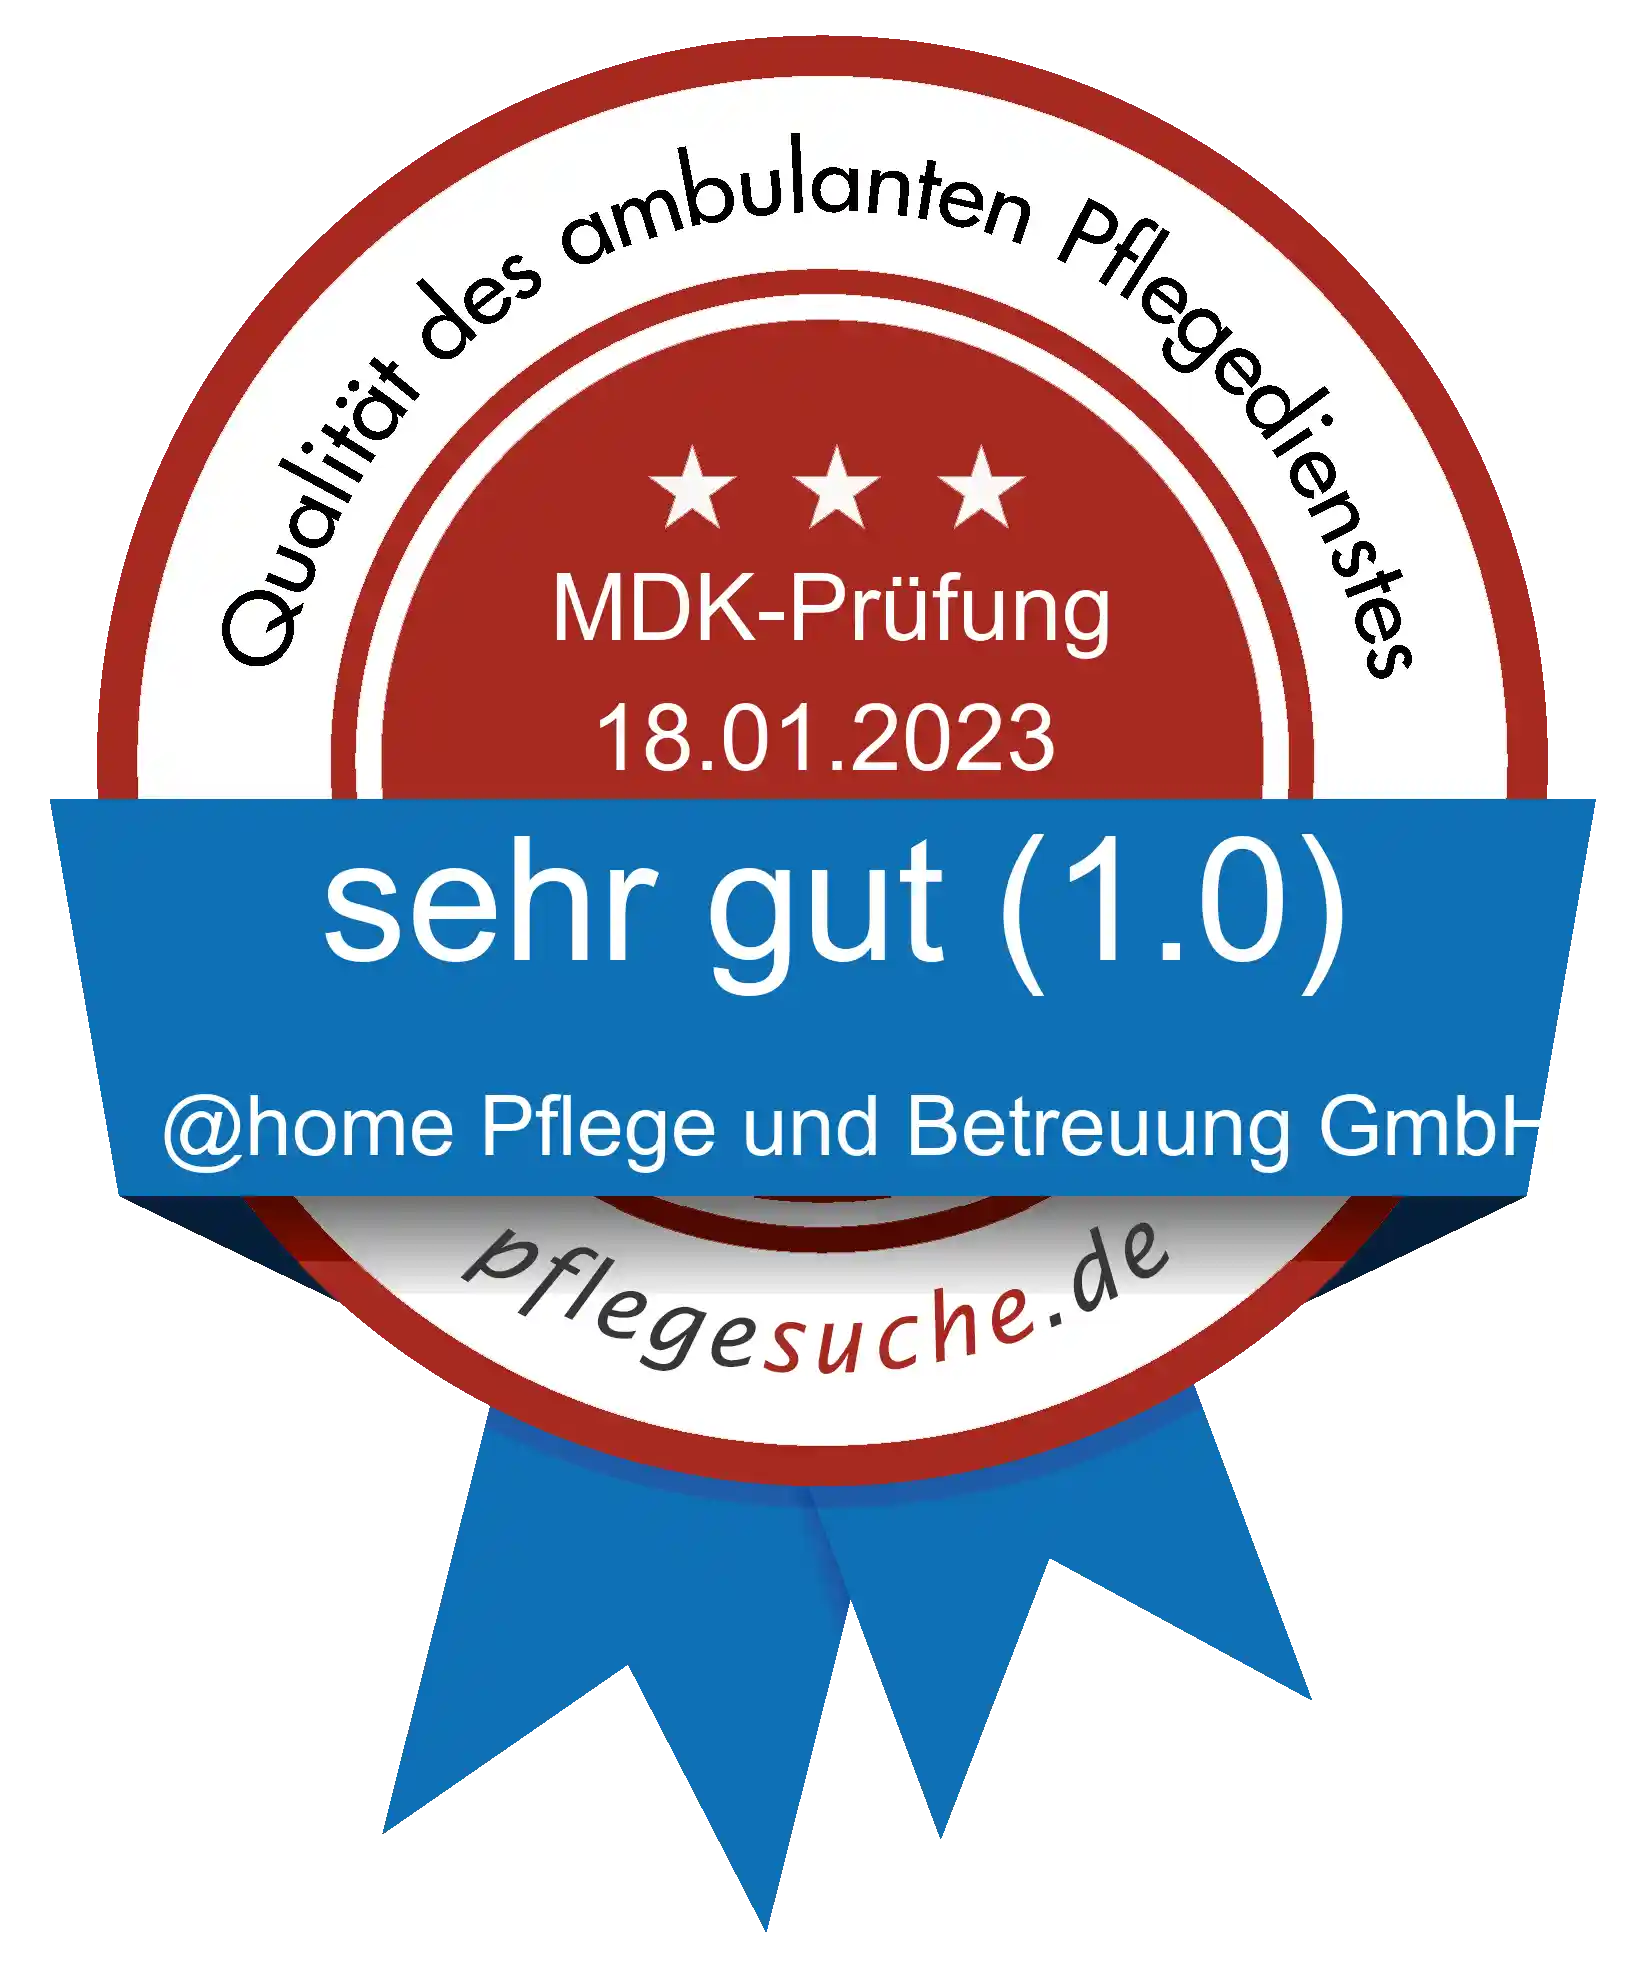 Siegel Benotung @home Pflege und Betreuung GmbH